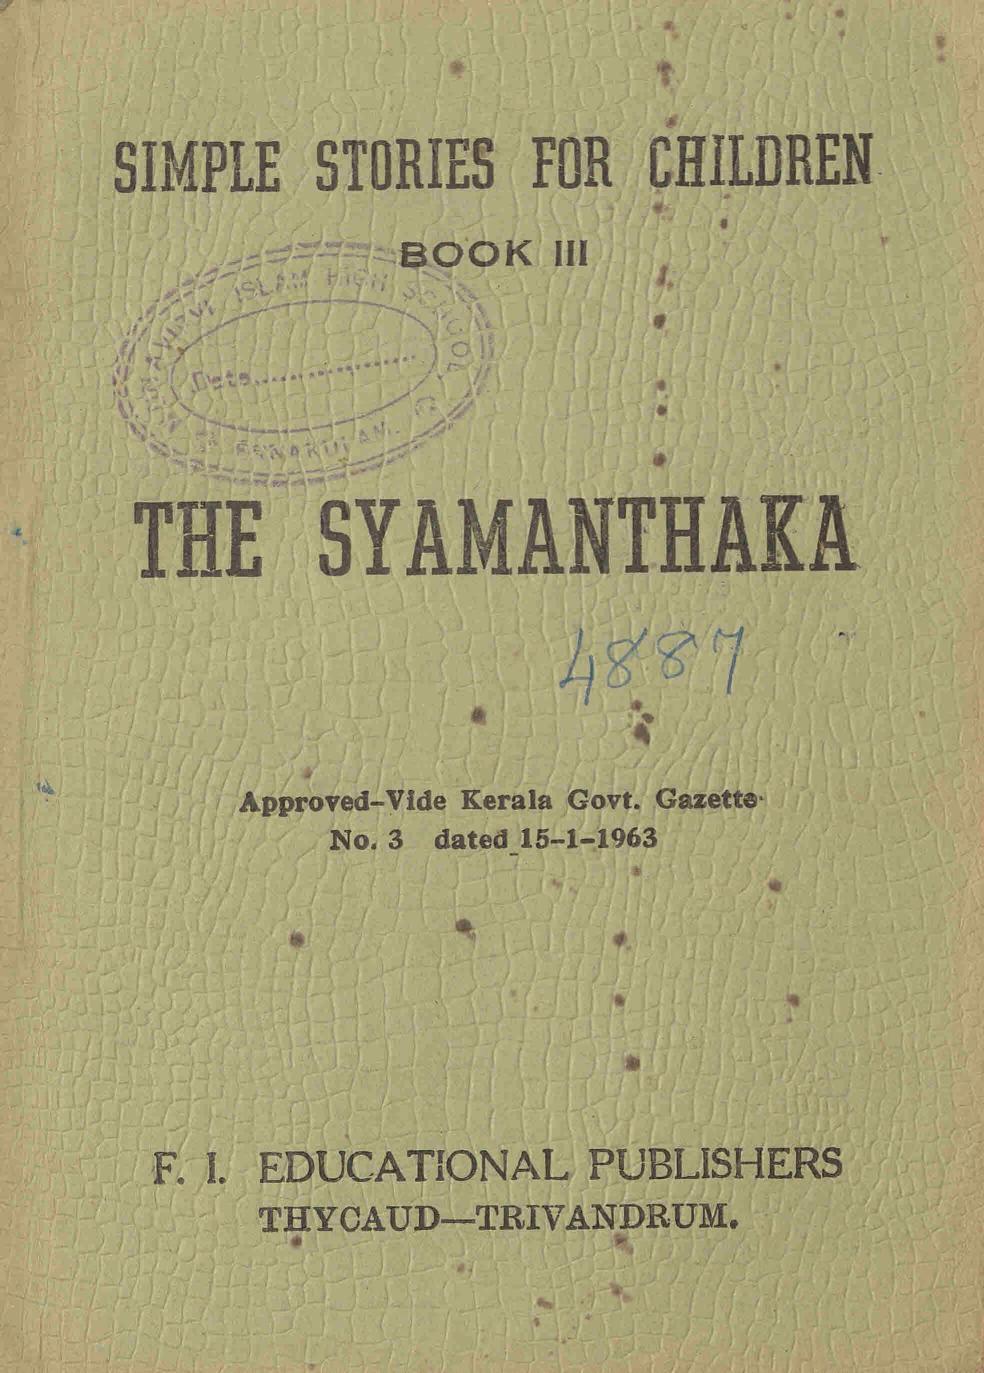 1963 - Syamanthaka - R. N. Nair